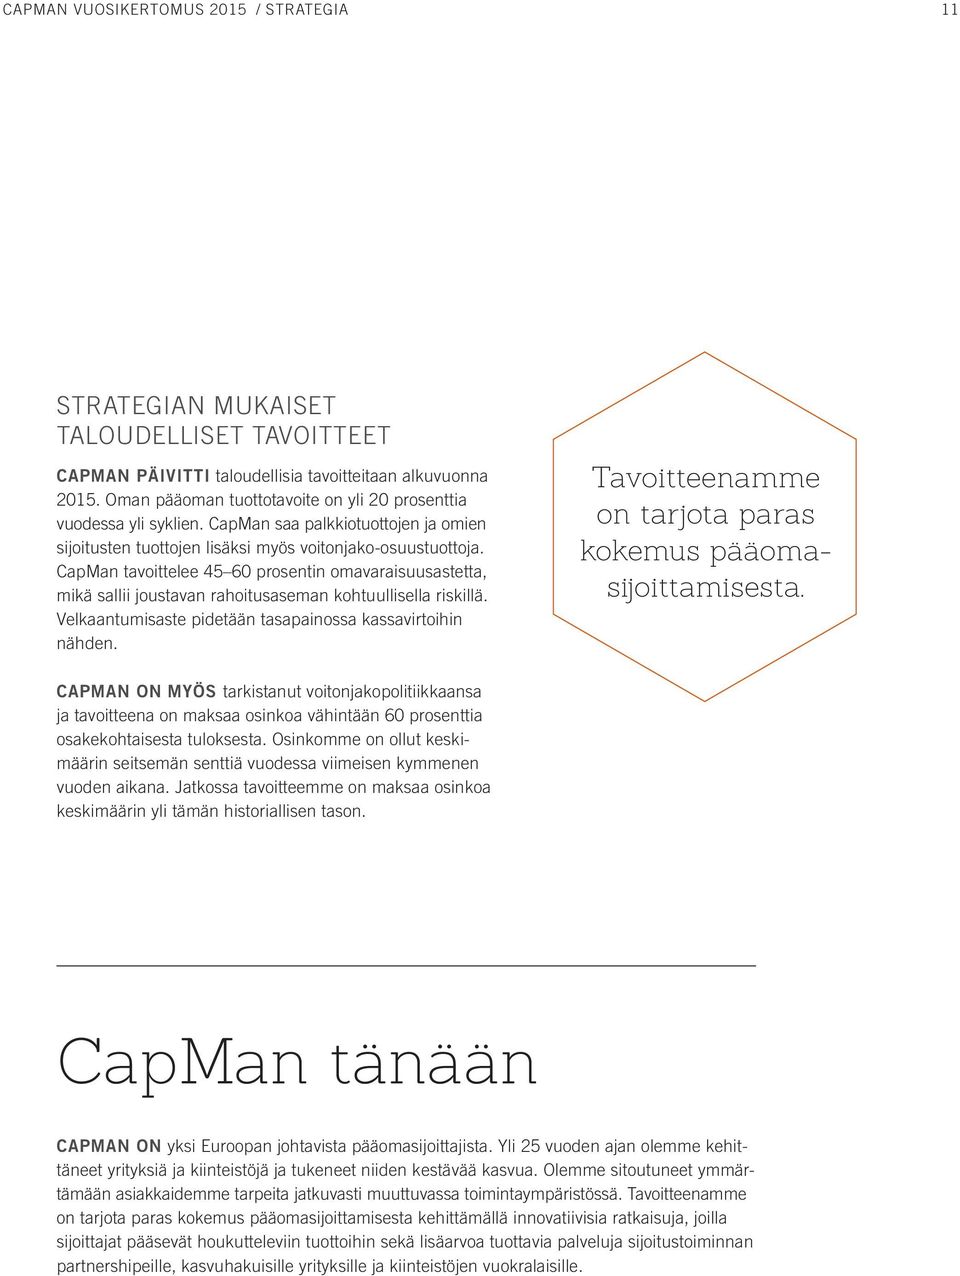 CapMan tavoittelee 45 60 prosentin omavaraisuusastetta, mikä sallii joustavan rahoitusaseman kohtuullisella riskillä. Velkaantumisaste pidetään tasapainossa kassavirtoihin nähden.